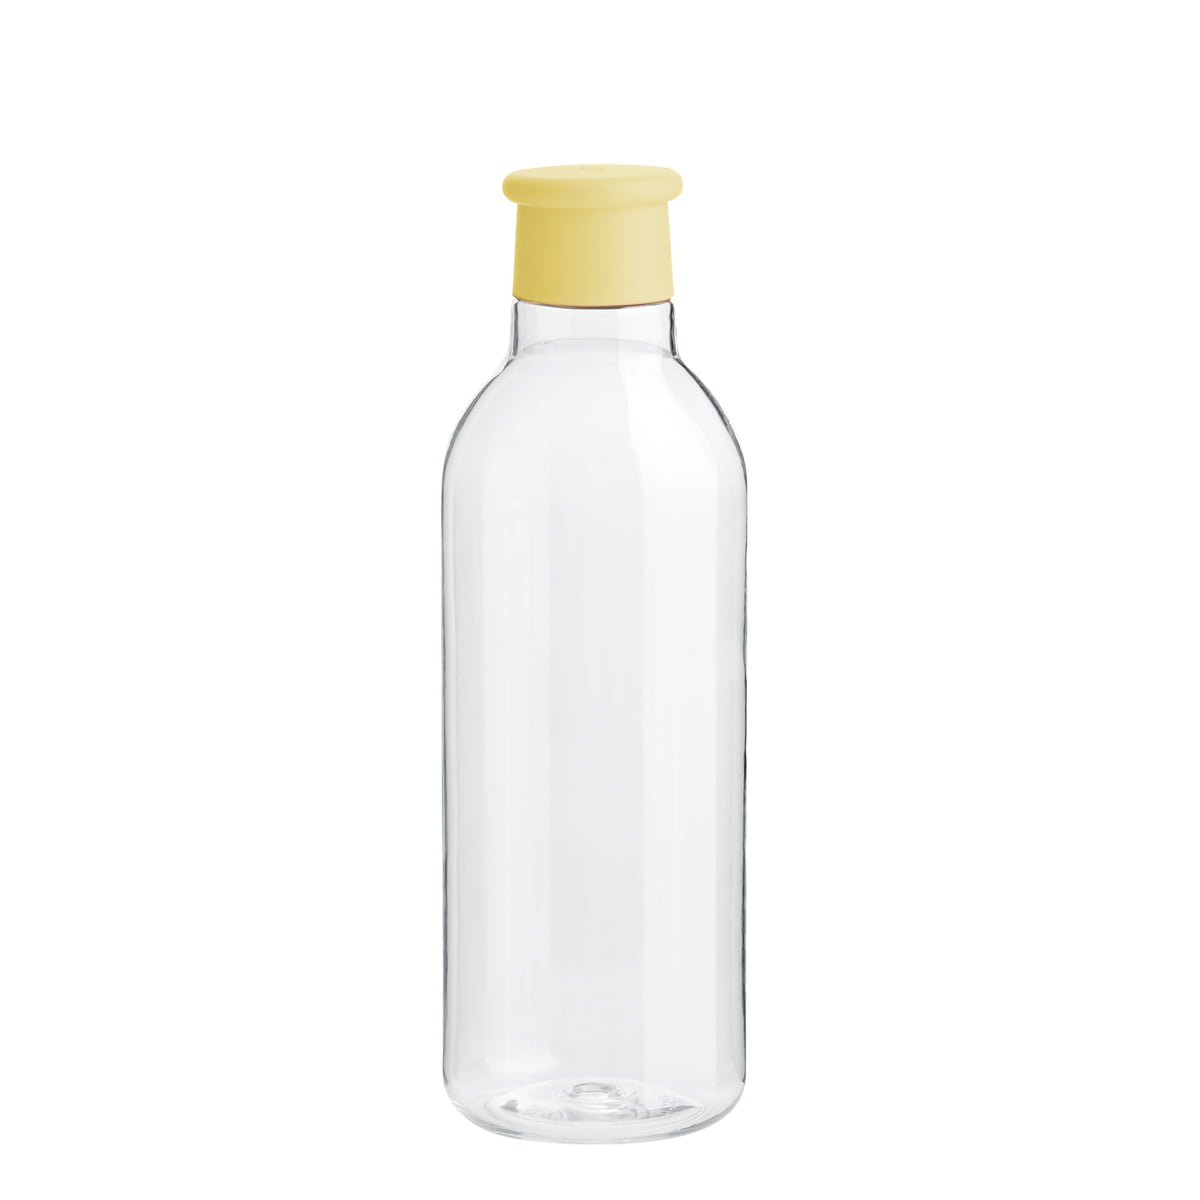 RIG-TIG by Stelton - Drink-It Wasserflasche 0.75 l, gelb